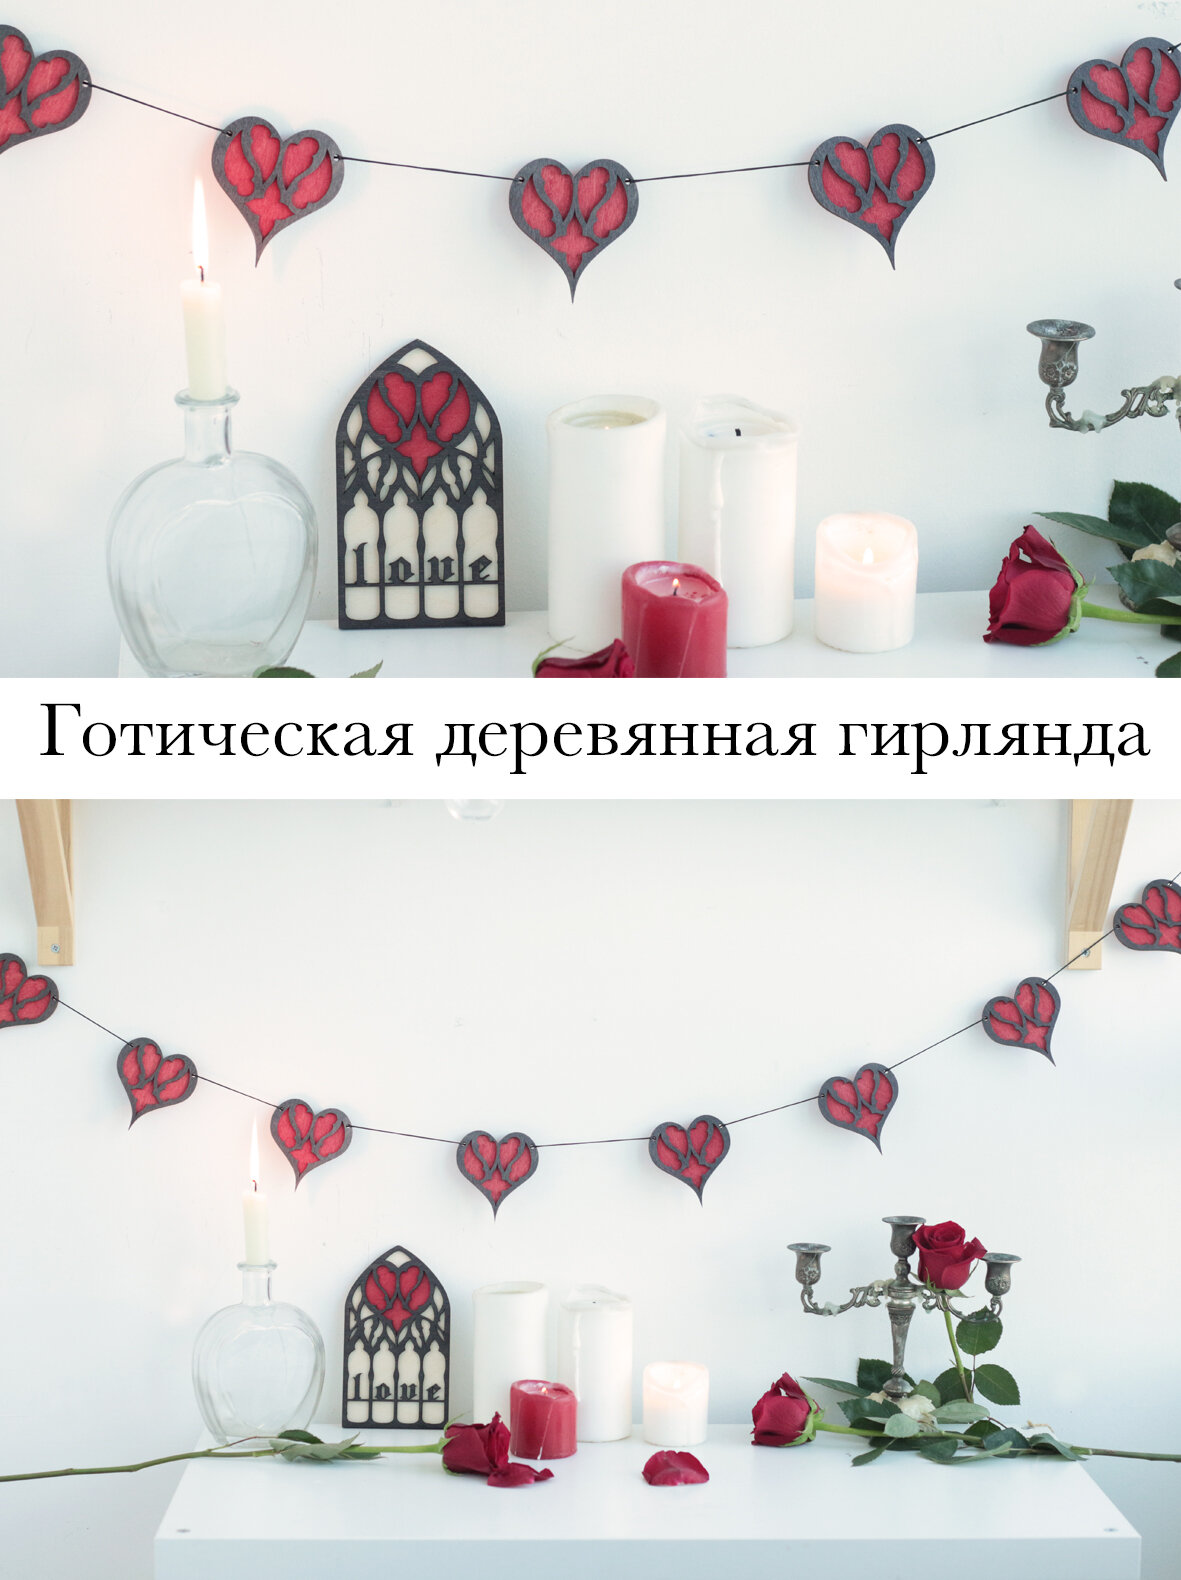 Гирлянда - готический декор на 14 февраля гирлянда на день святого Валентина